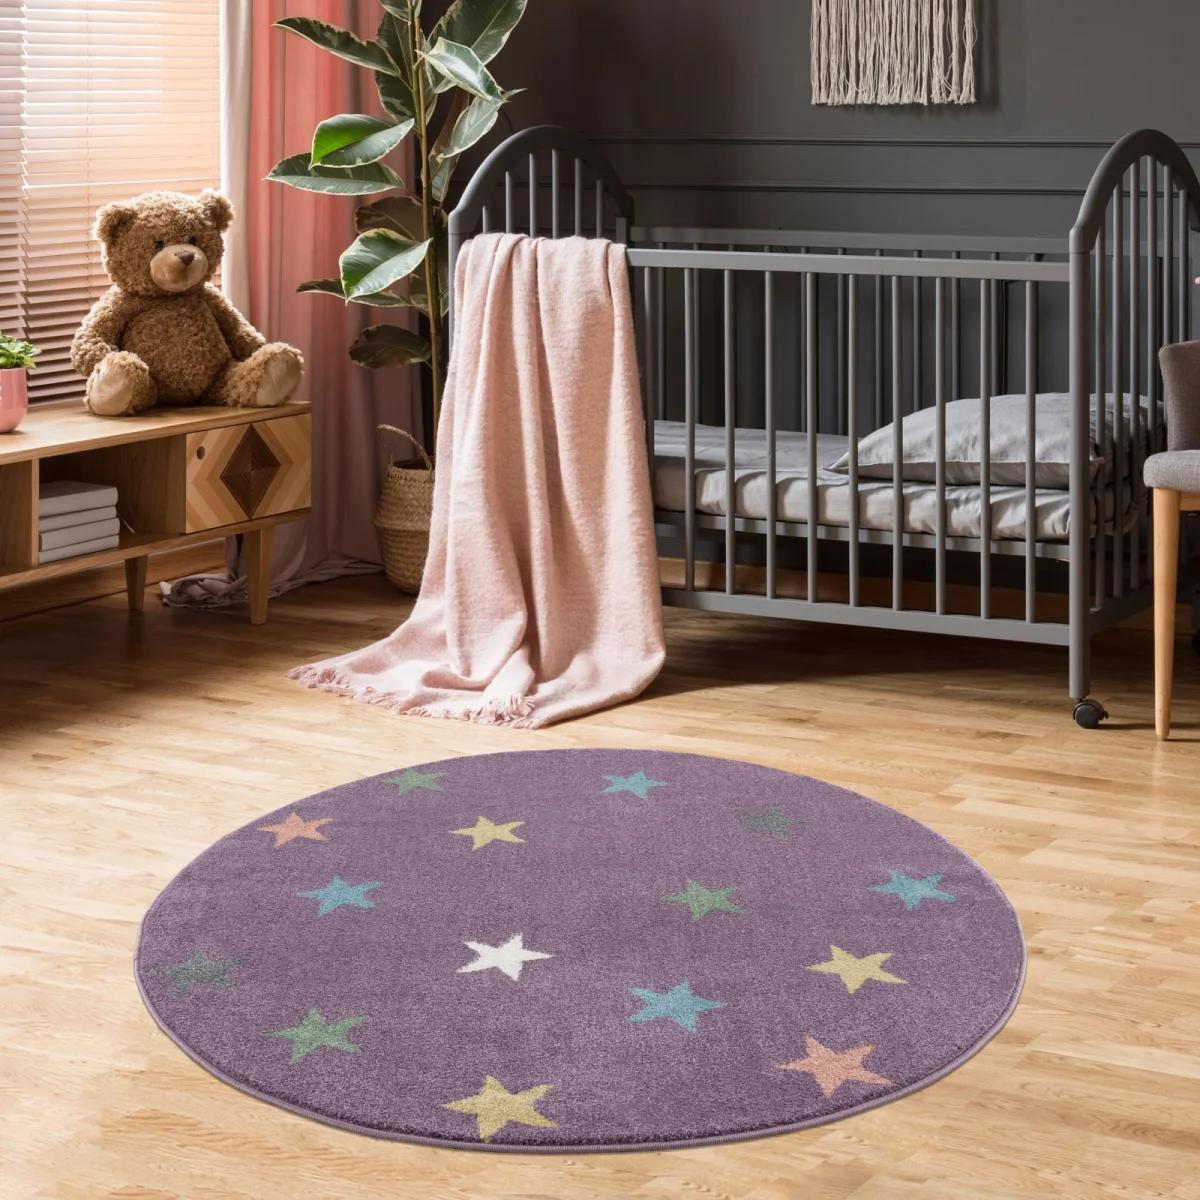 Dywan dziecięcy krągły Violet Stars Round 133 cm do pokoju dziecięcego fioletowy w gwiazdki nr. 1